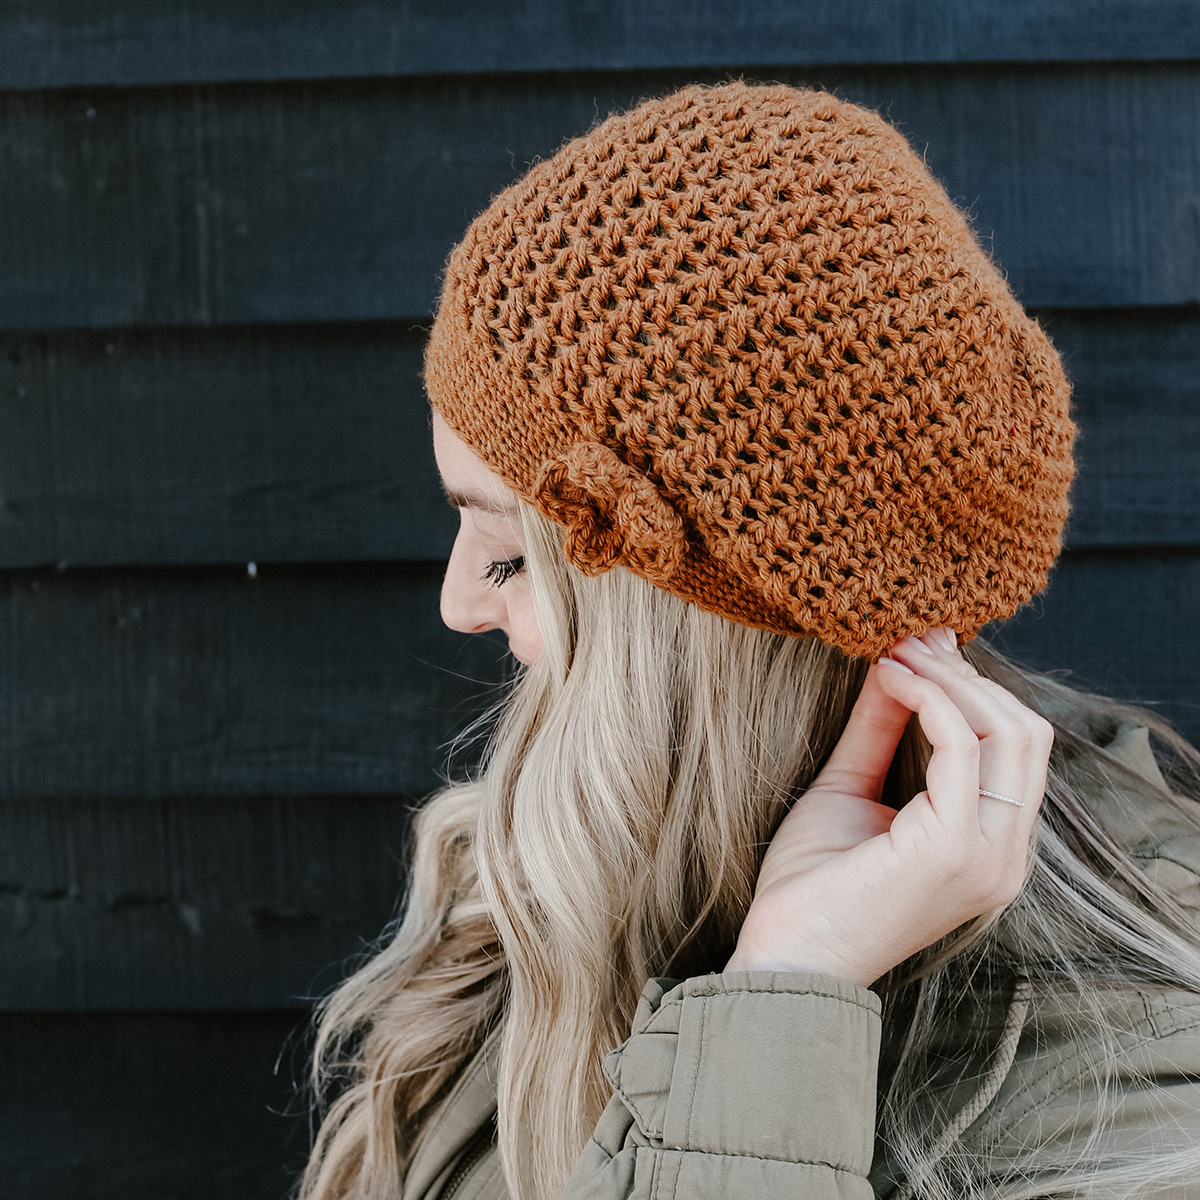 Susan Lee - Crochet hat maker - Build-A-Hat